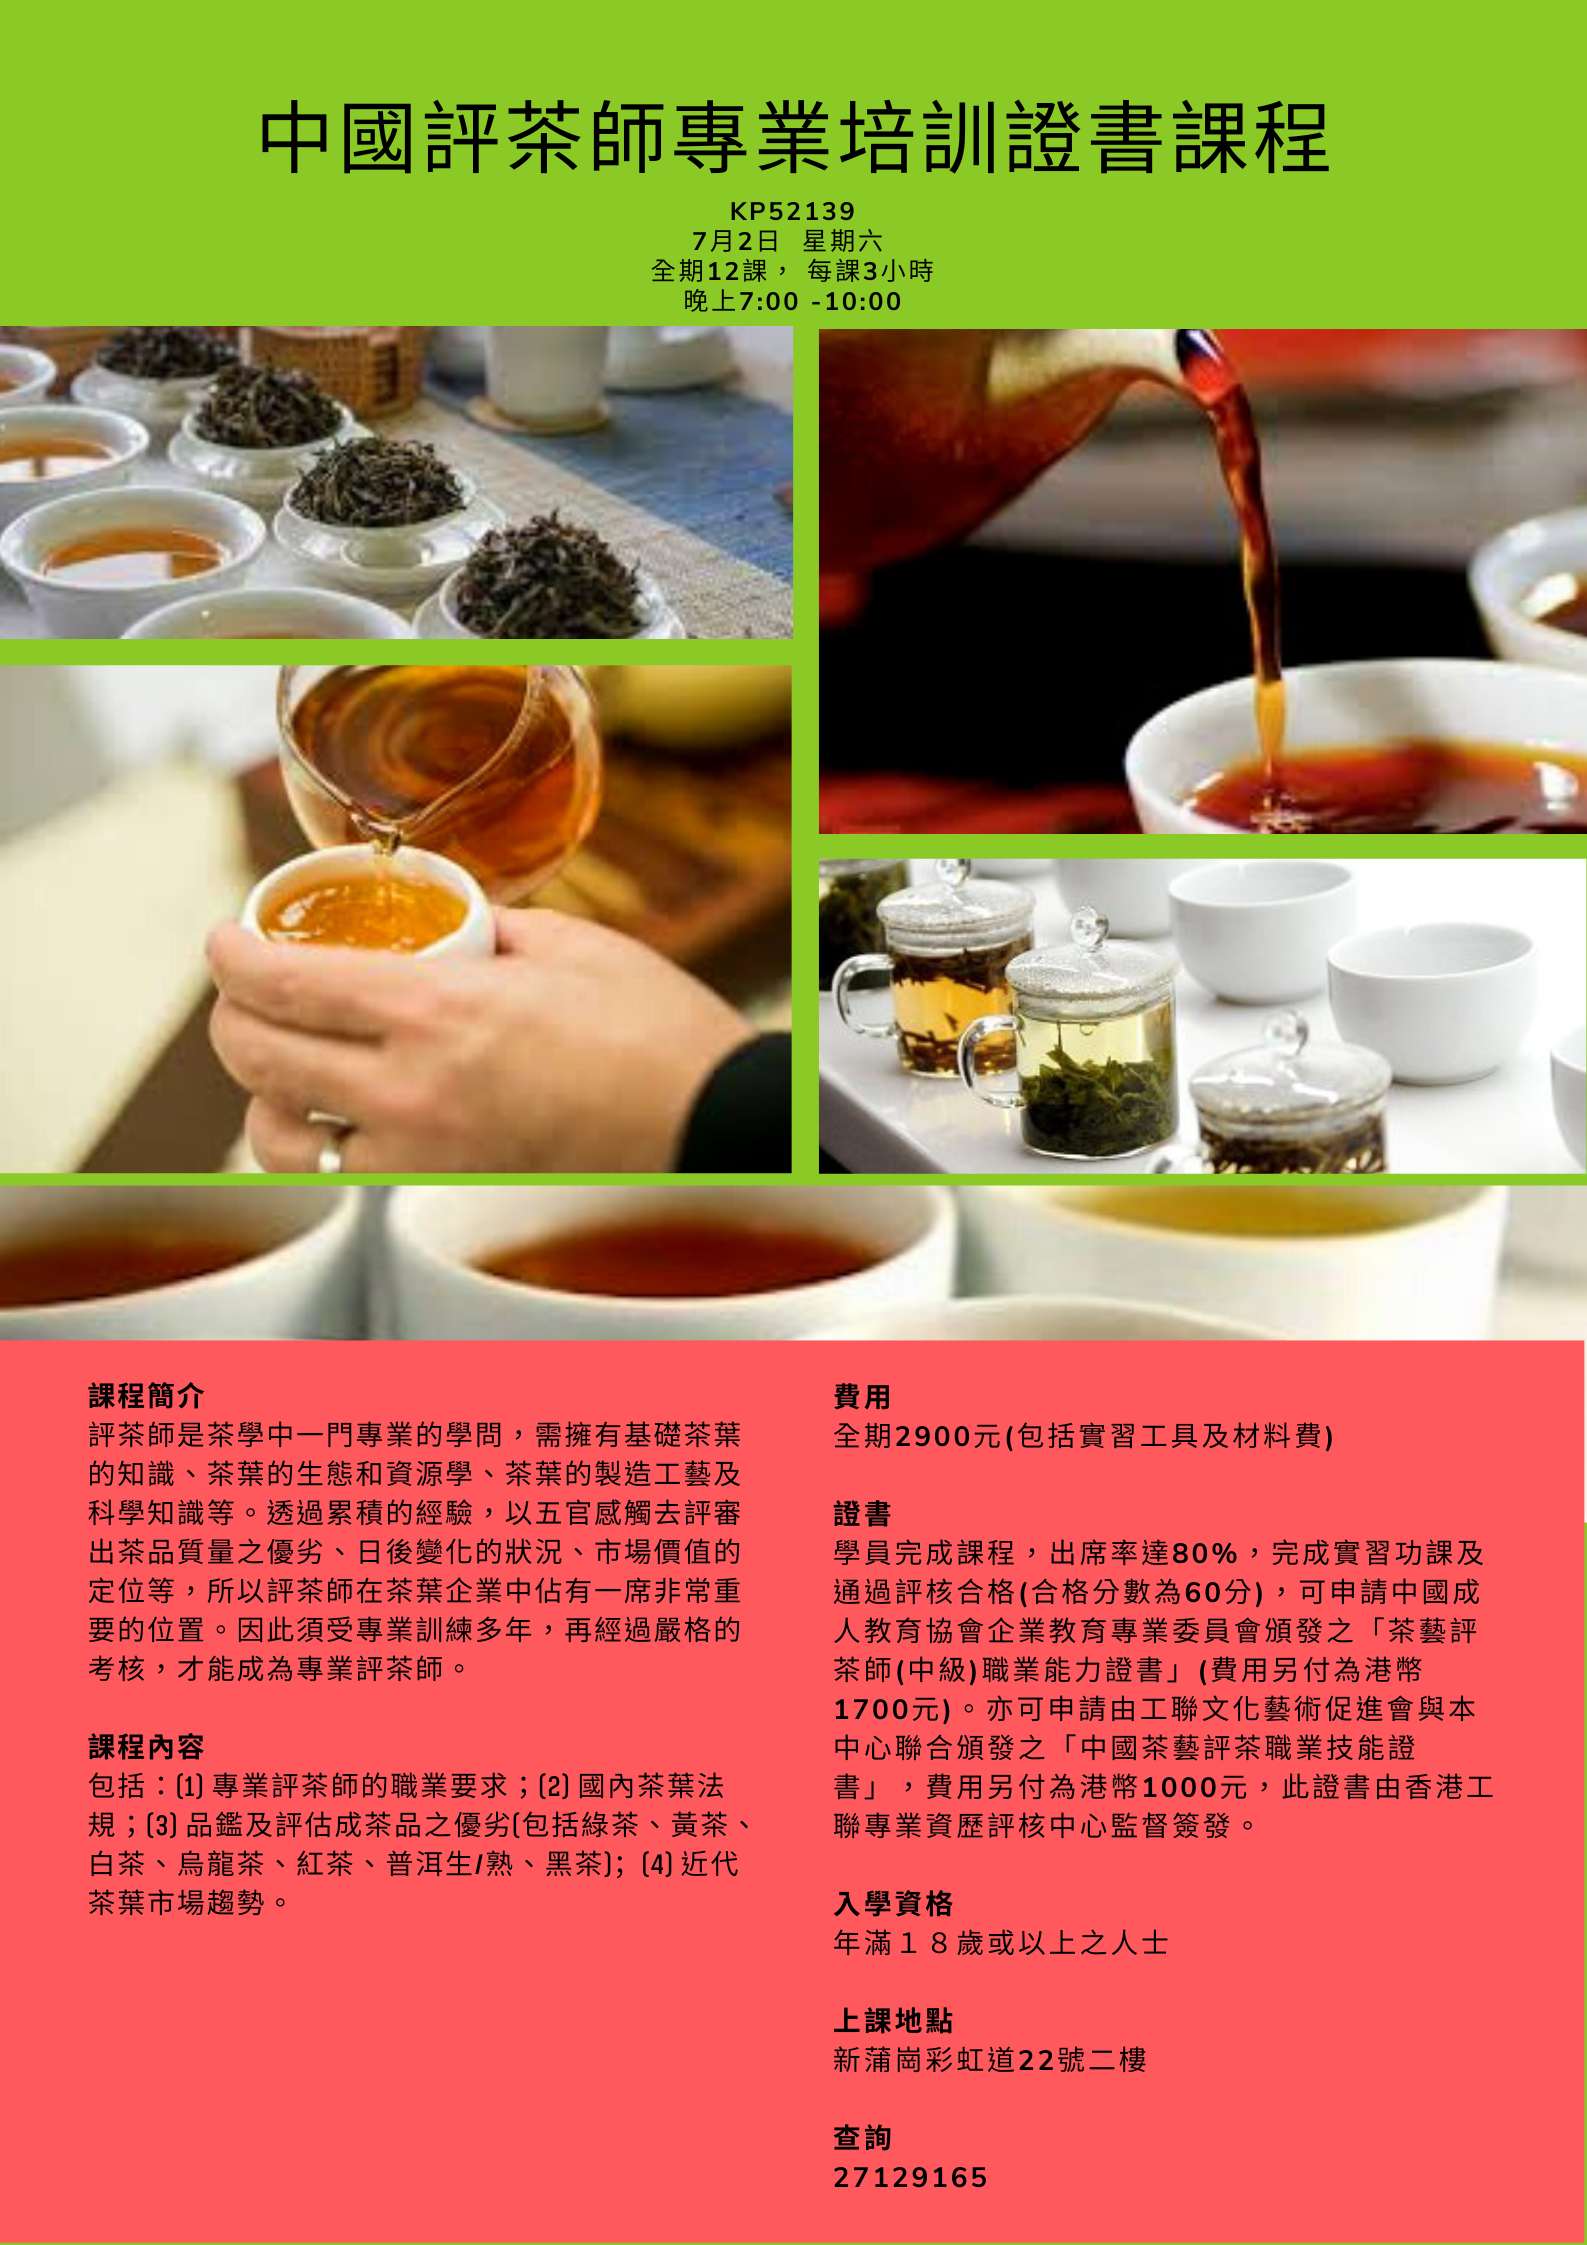 中國評茶師專業培訓證書課程